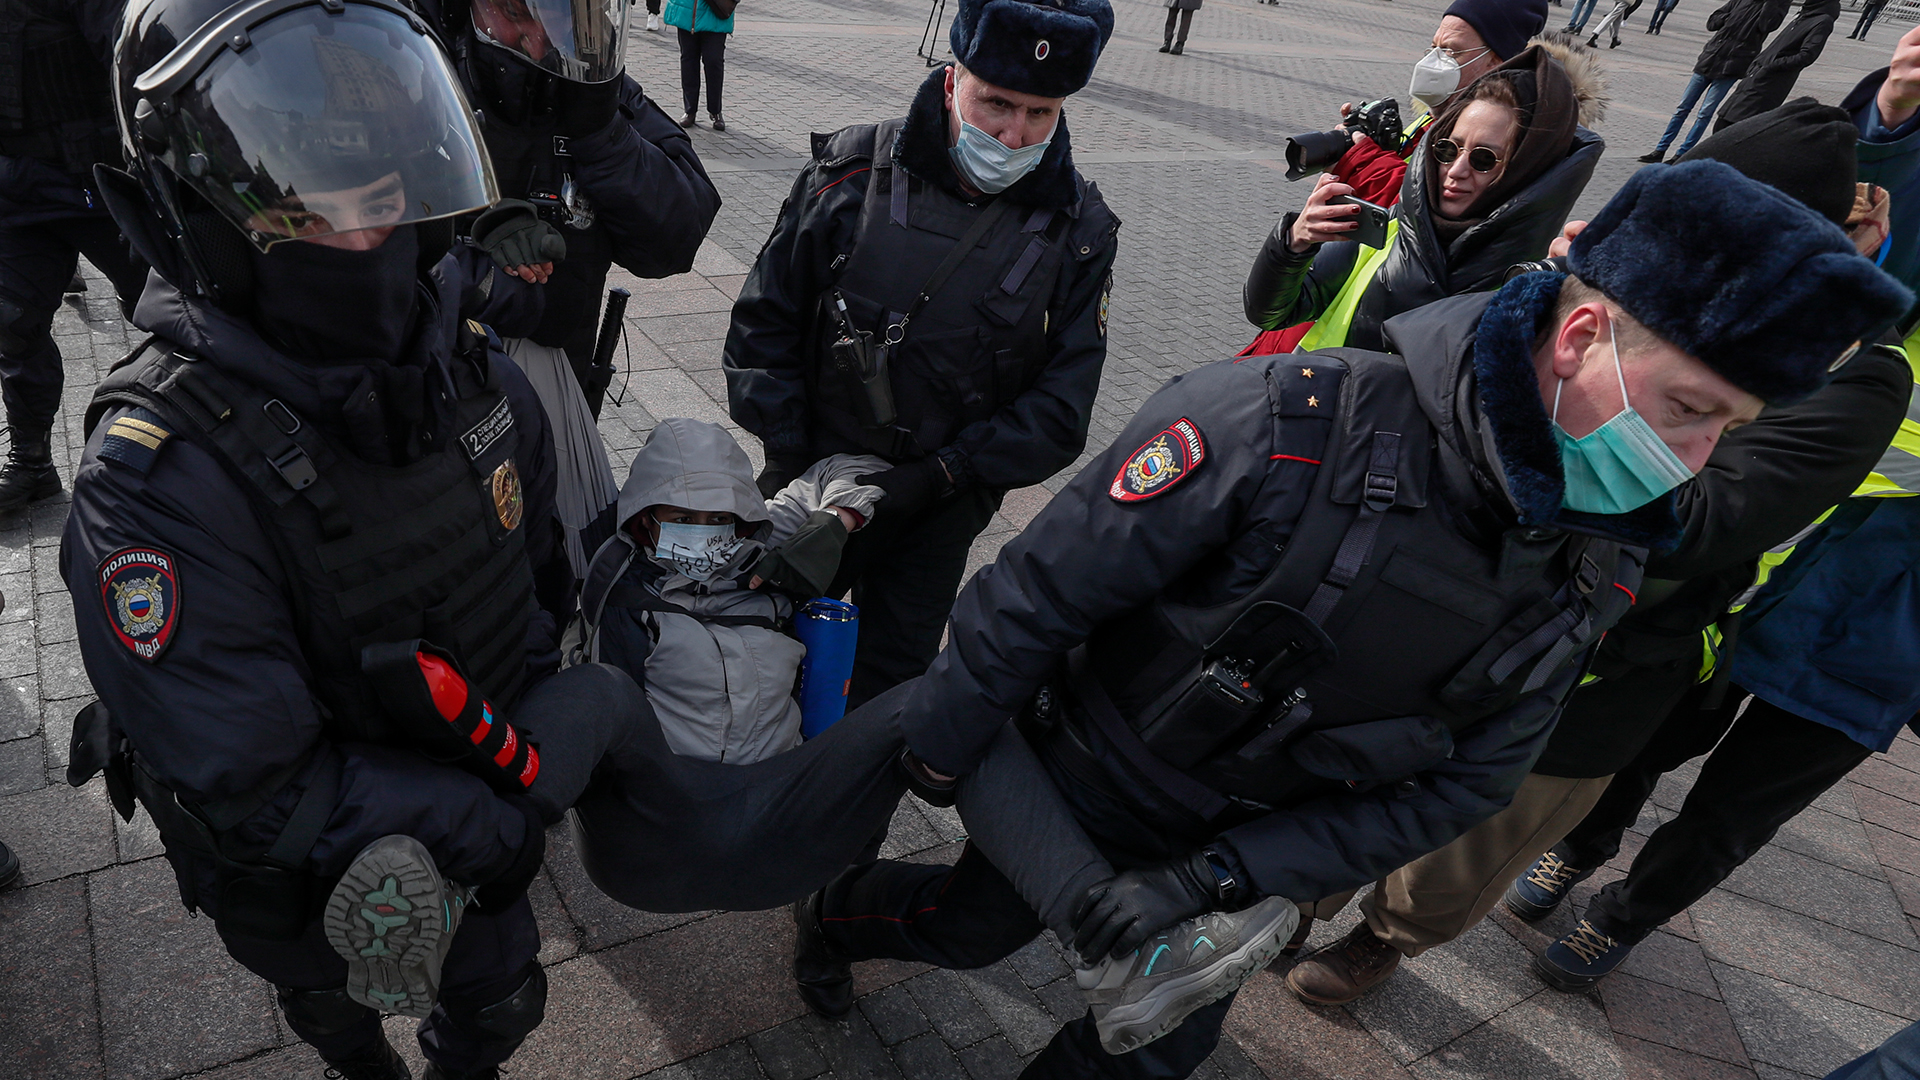 Russische Polizisten nehmen einen Teilnehmer einer nicht autorisierten Kundgebung gegen die russische Invasion in der Ukraine bei einer Demo in Moskau fest.